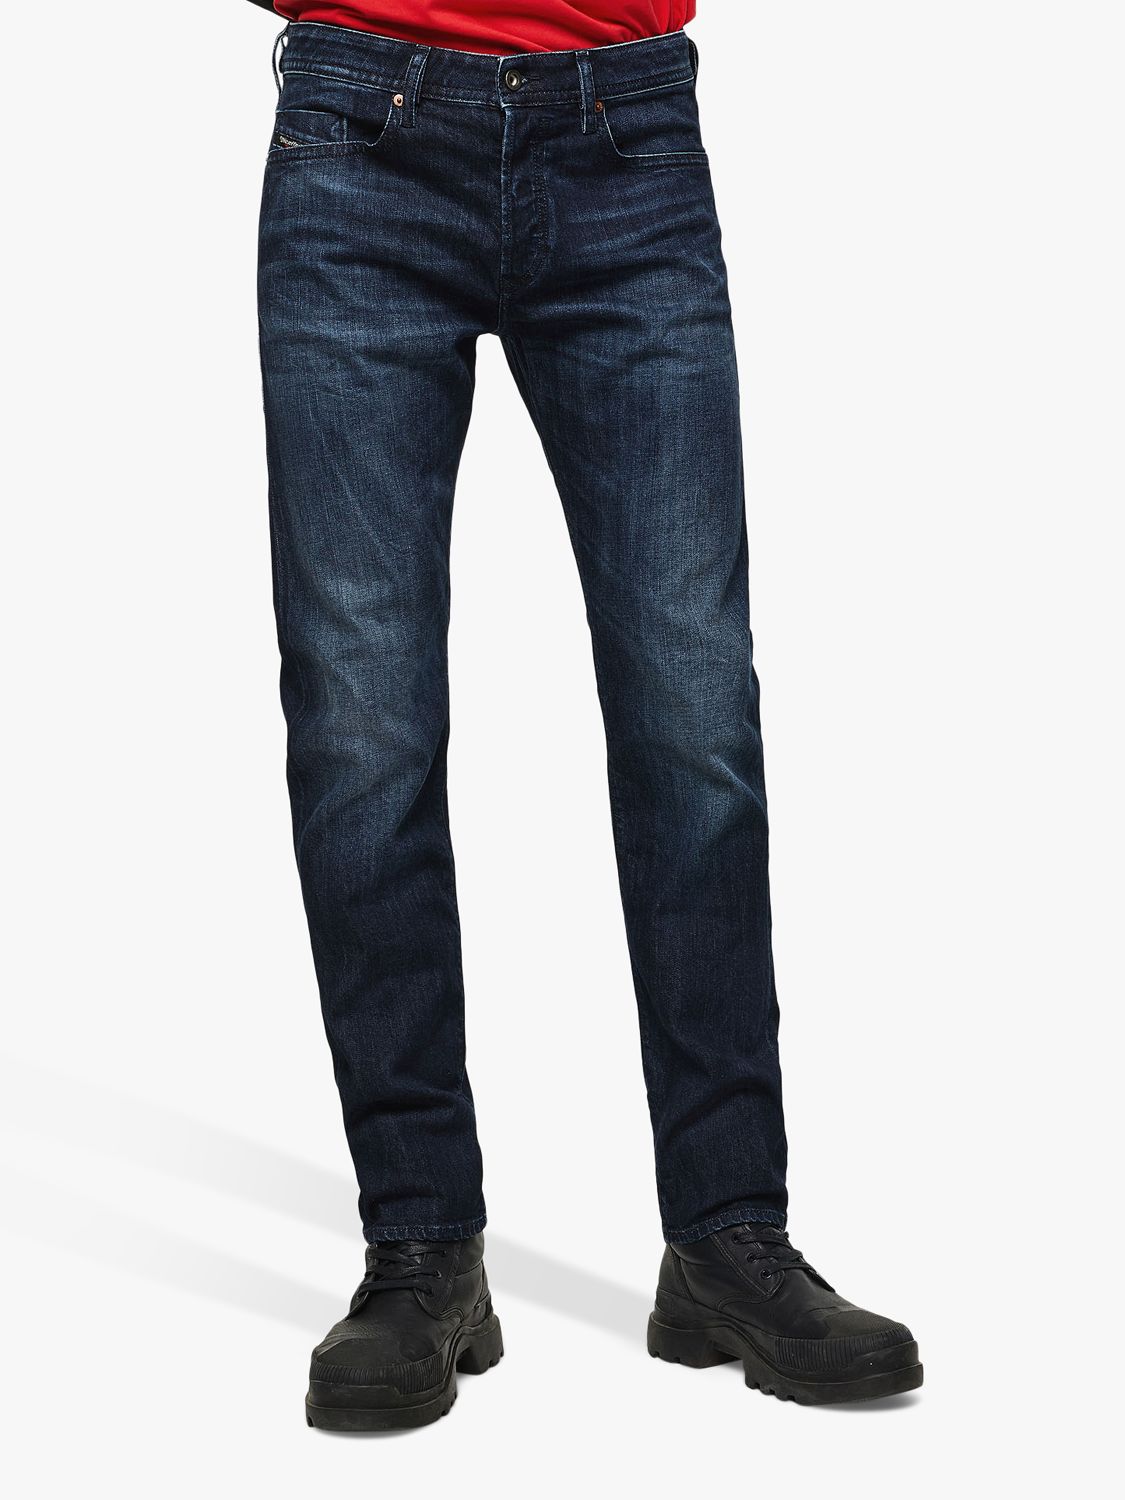 Diesel Buster Slim Jeans, Dark Grey 0095W, 32S